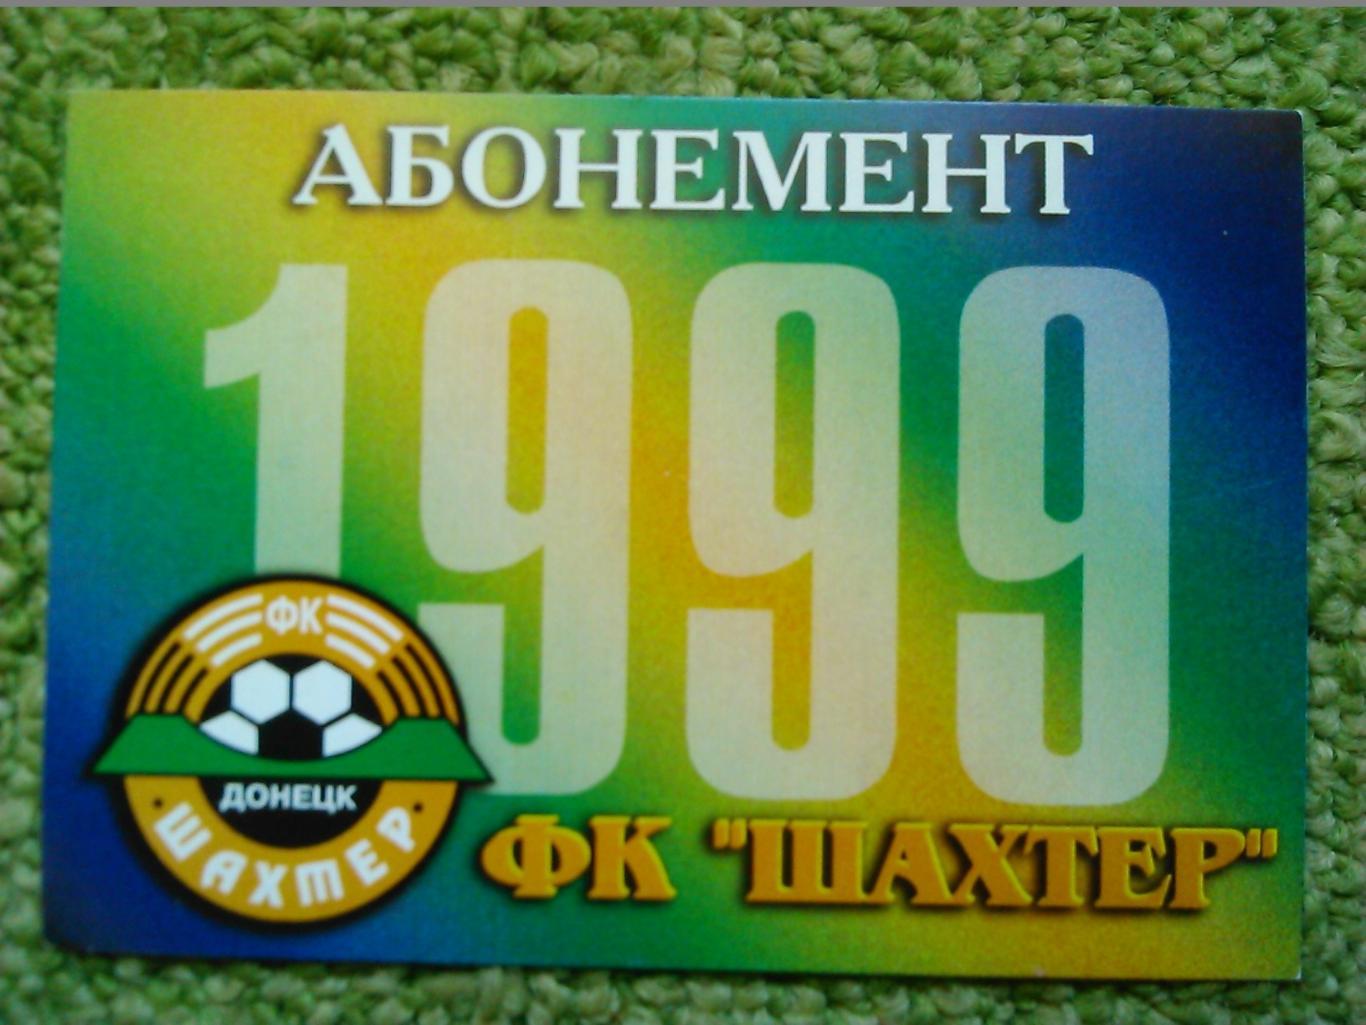 ШАХТЕР Донецк -абонемент на бесплатное посещение 1999. Оптом скидки до 48%!